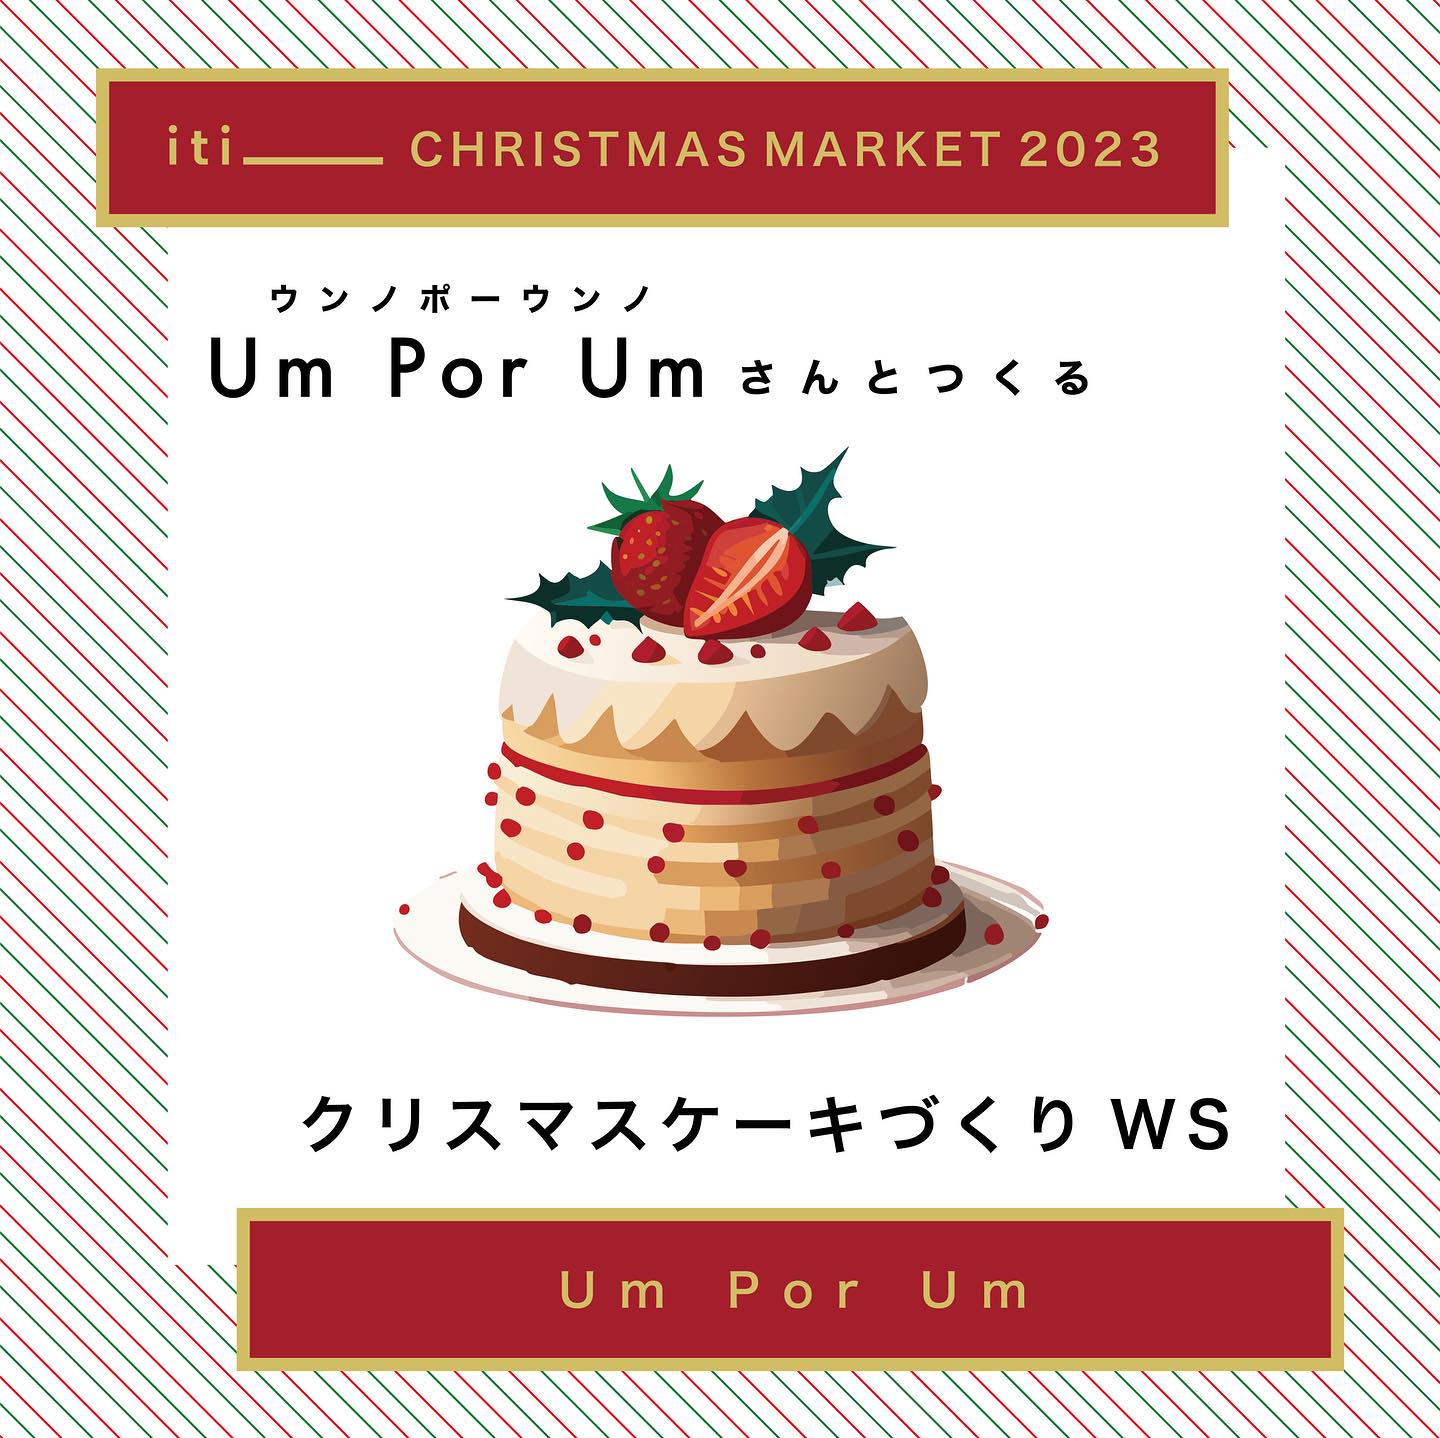 12/24(sat) Um Por UmさんとつくるクリスマスケーキづくりWS